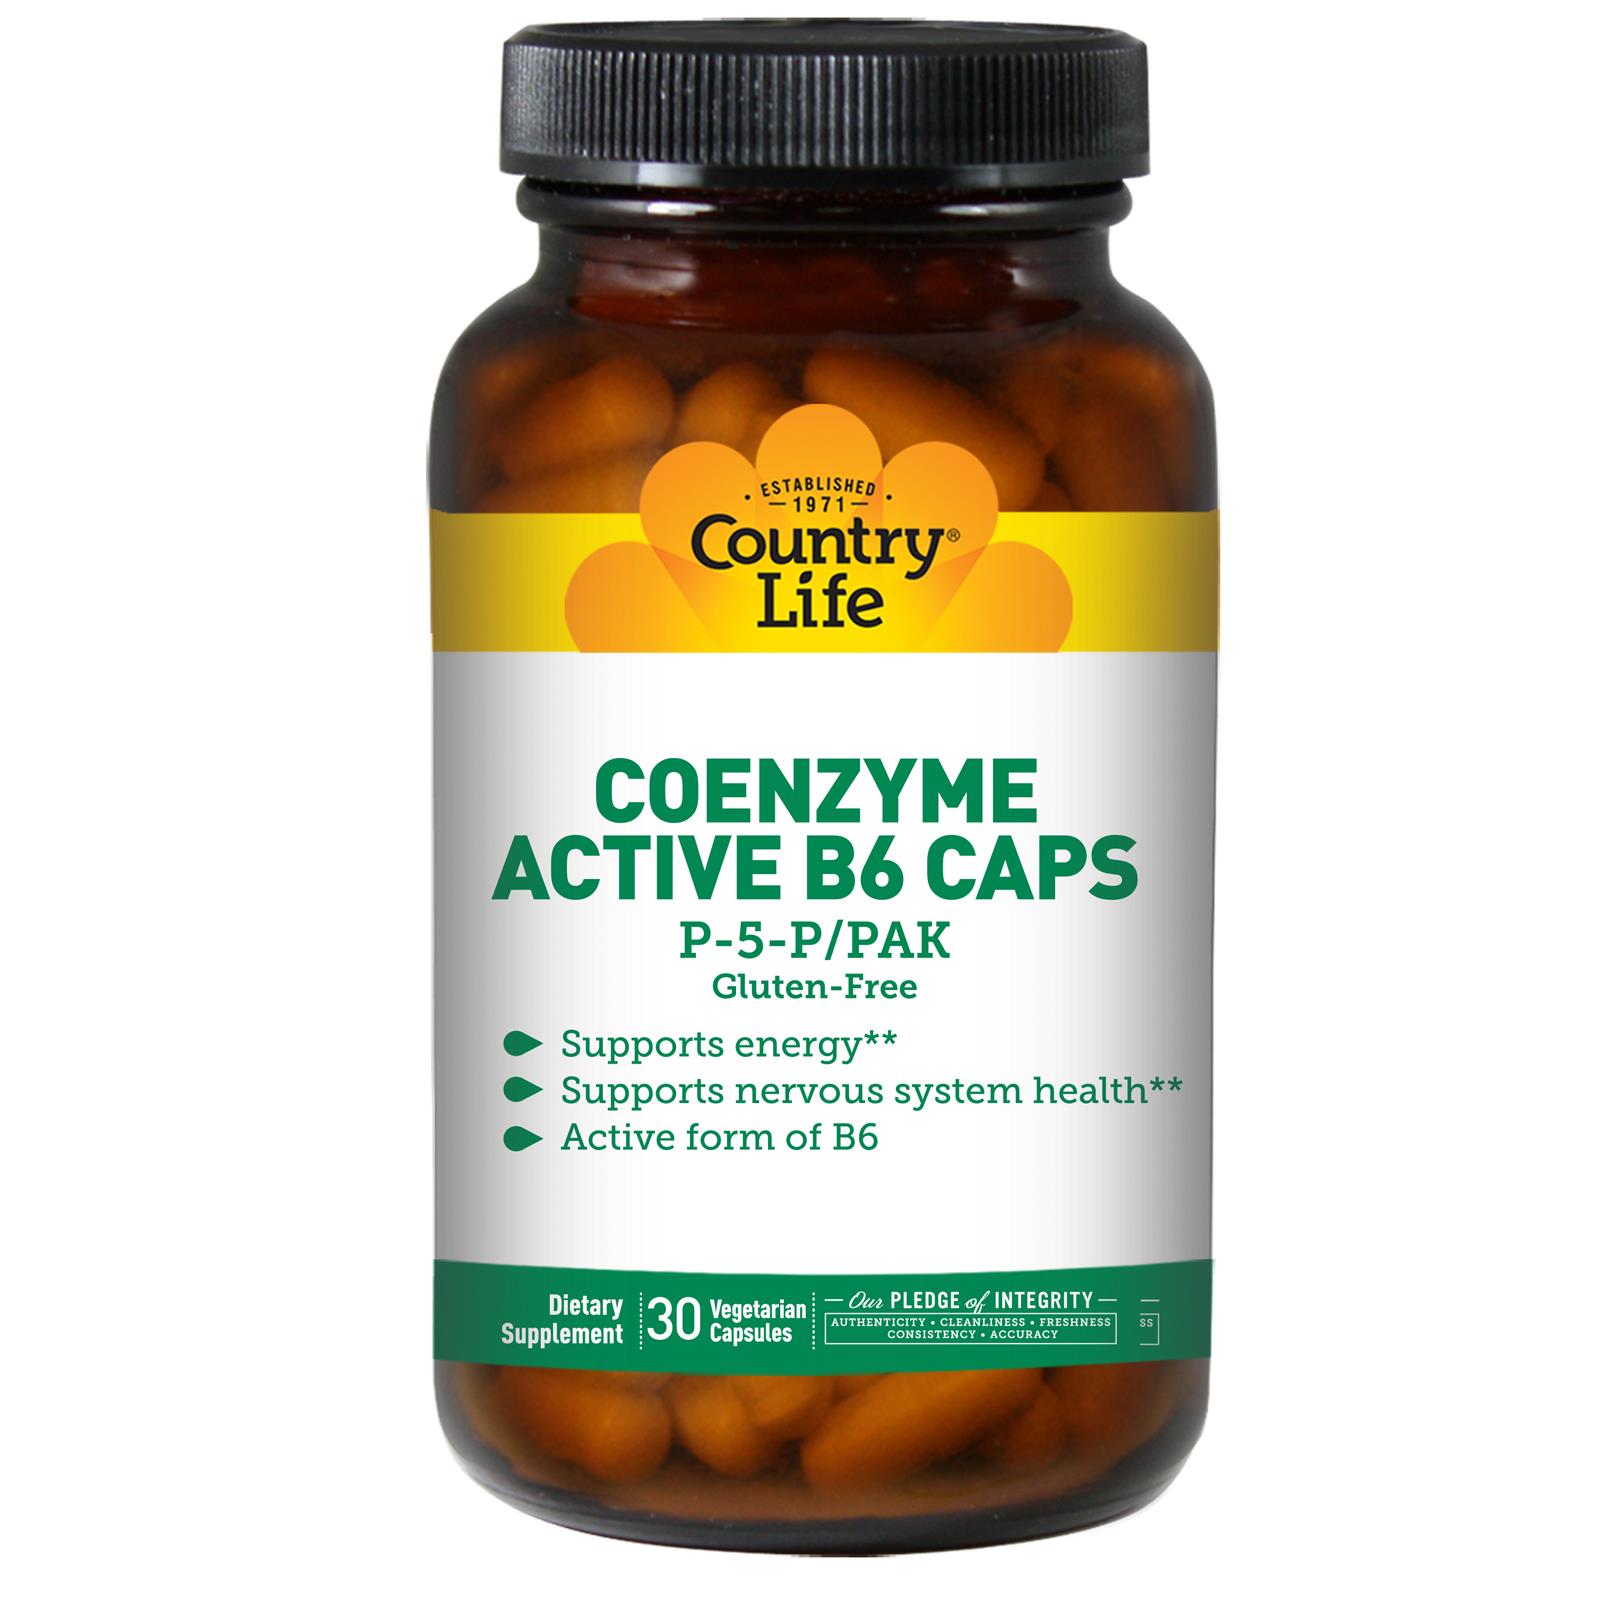 Coenzyme Active B6 Caps